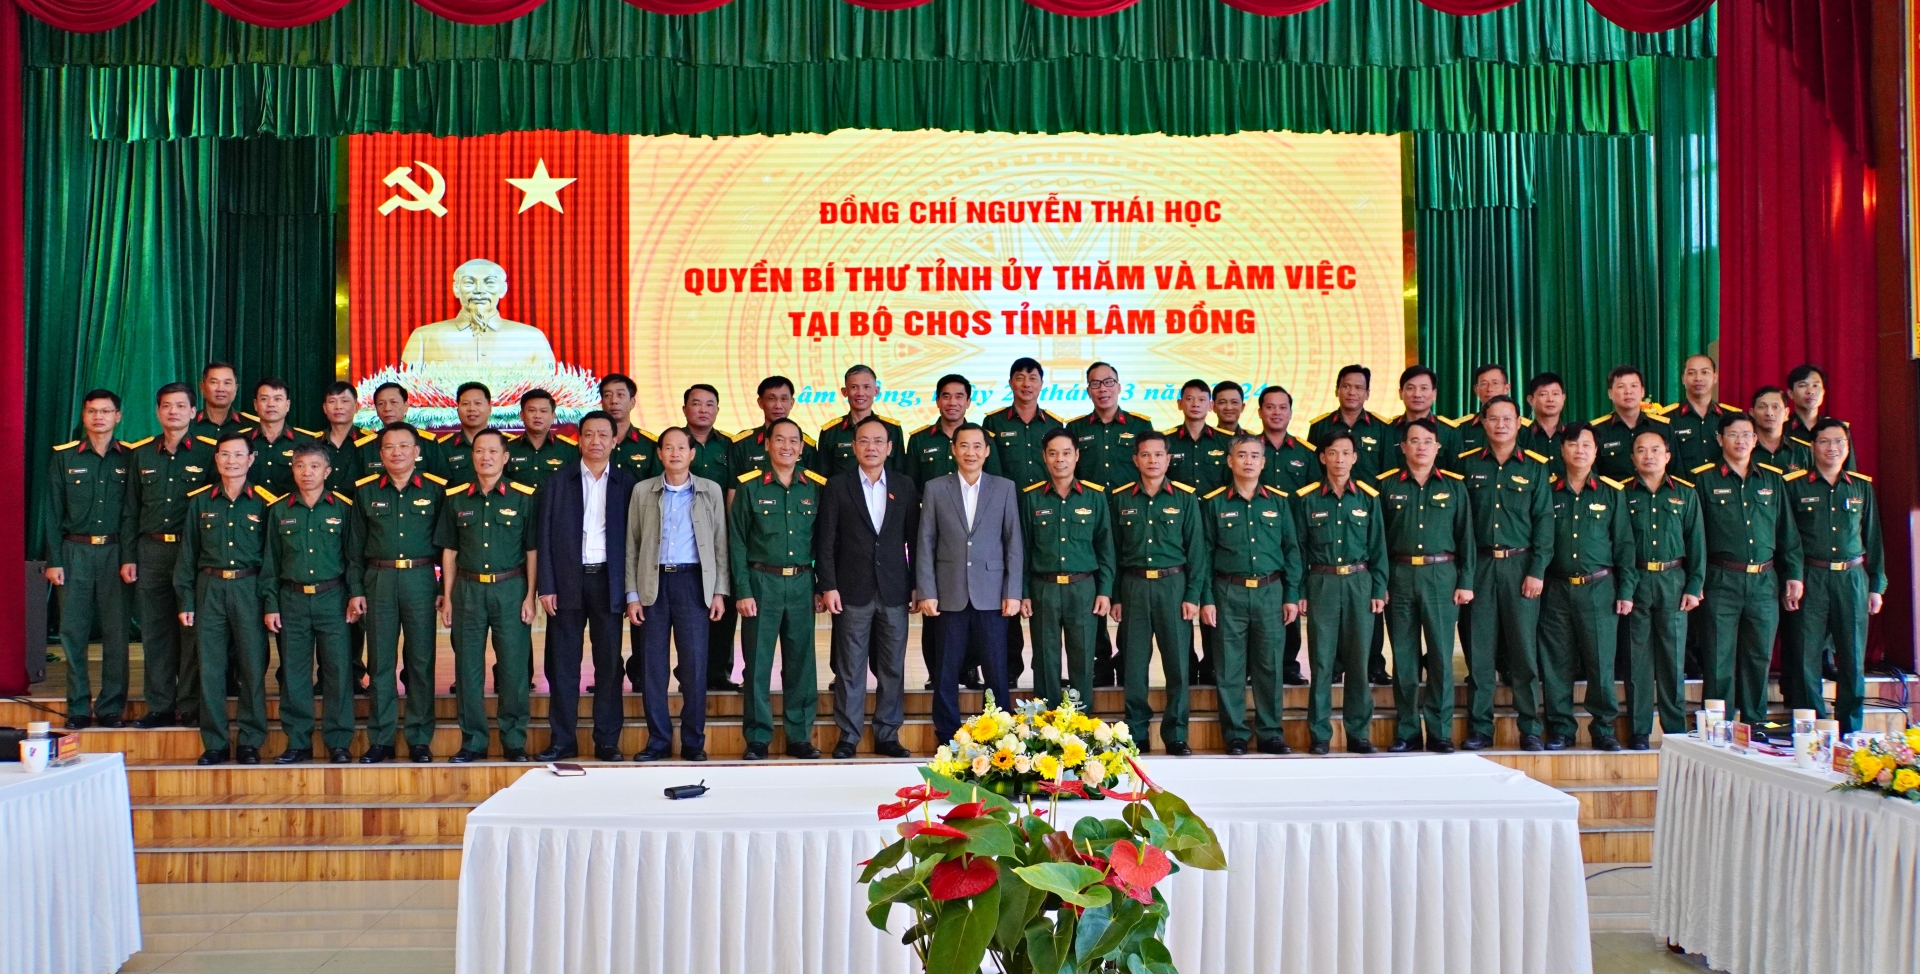 Đồng chí Nguyễn Thái Học - Quyền Bí thư Tỉnh uỷ Lâm Đồng chụp hình lưu niệm với Bộ CHQS tỉnh